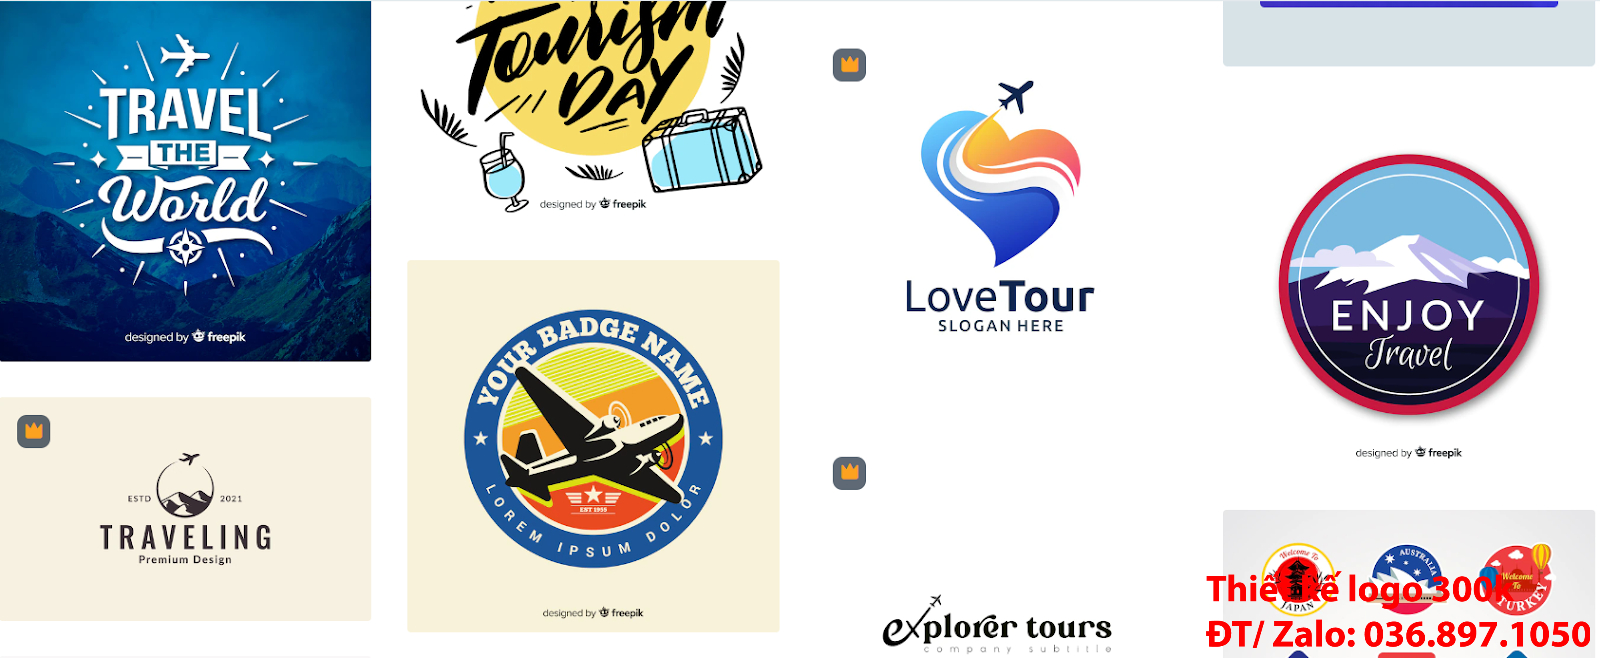 Mẫu Thiết Kế Logo công ty du lịch tour đẹp giá rẻ ở Hà Nội từ 300k đến 500k uy tín chất lượng cao